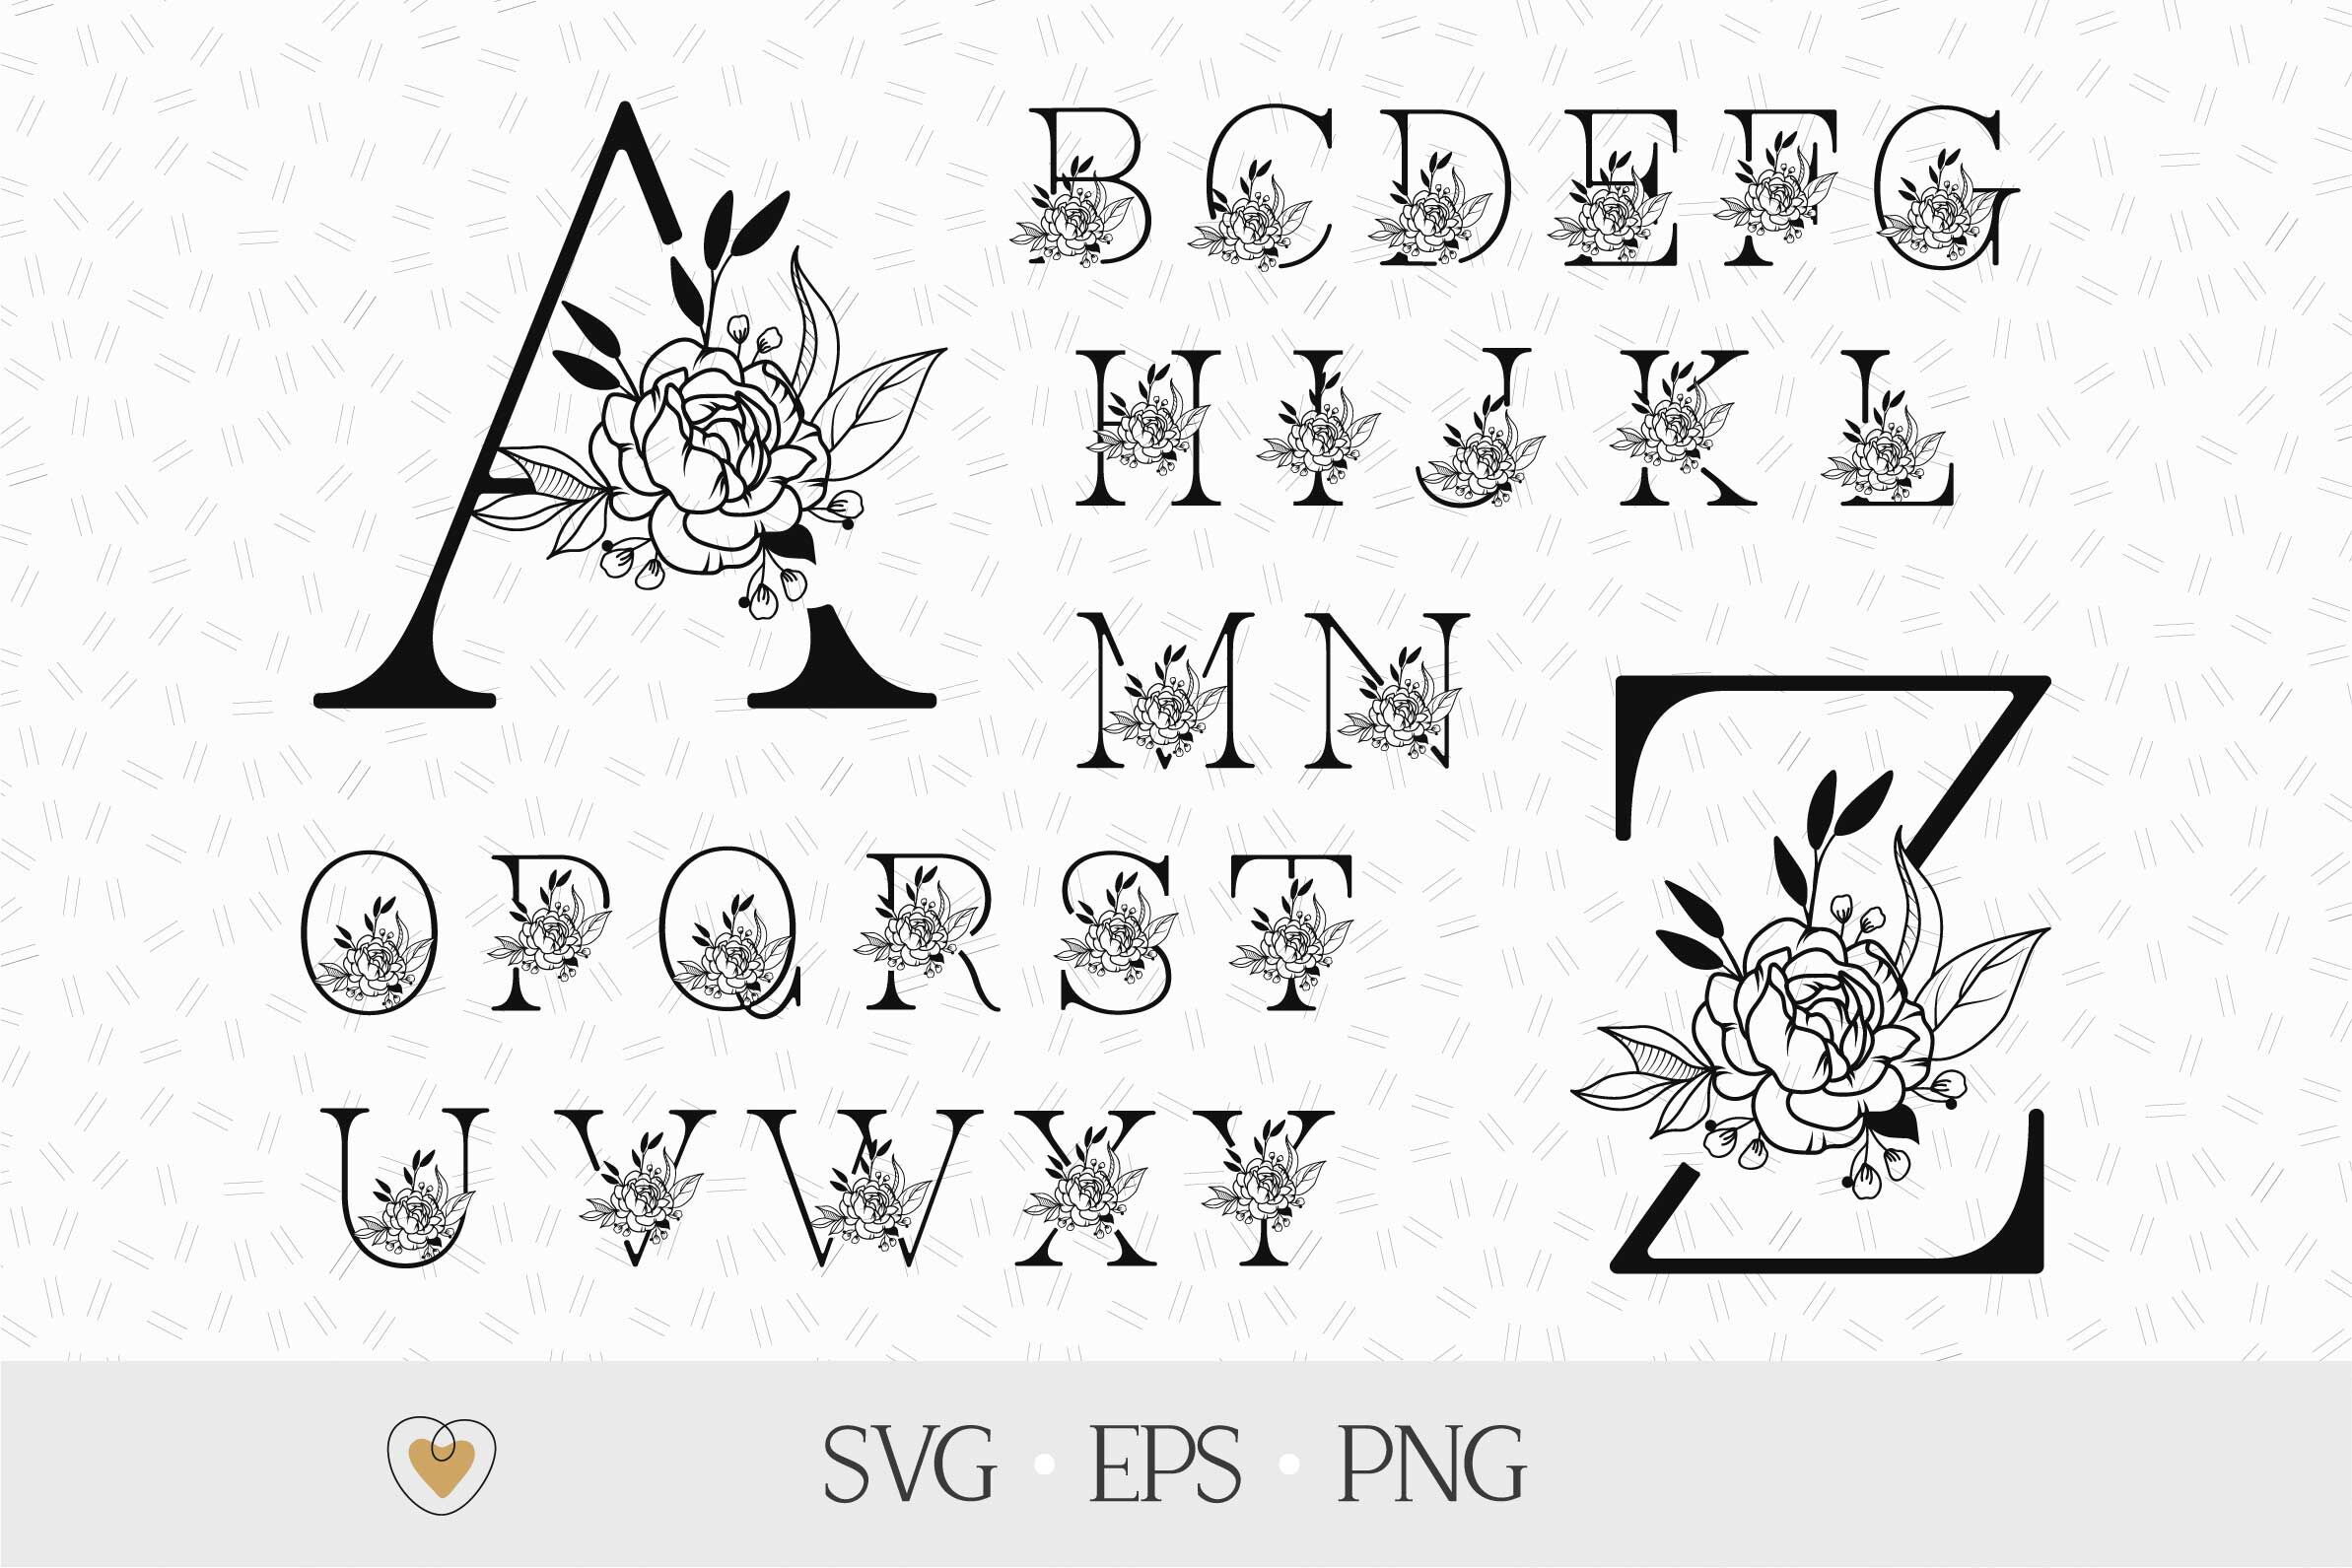 Free Free 111 Floral Letter Svg Free SVG PNG EPS DXF File